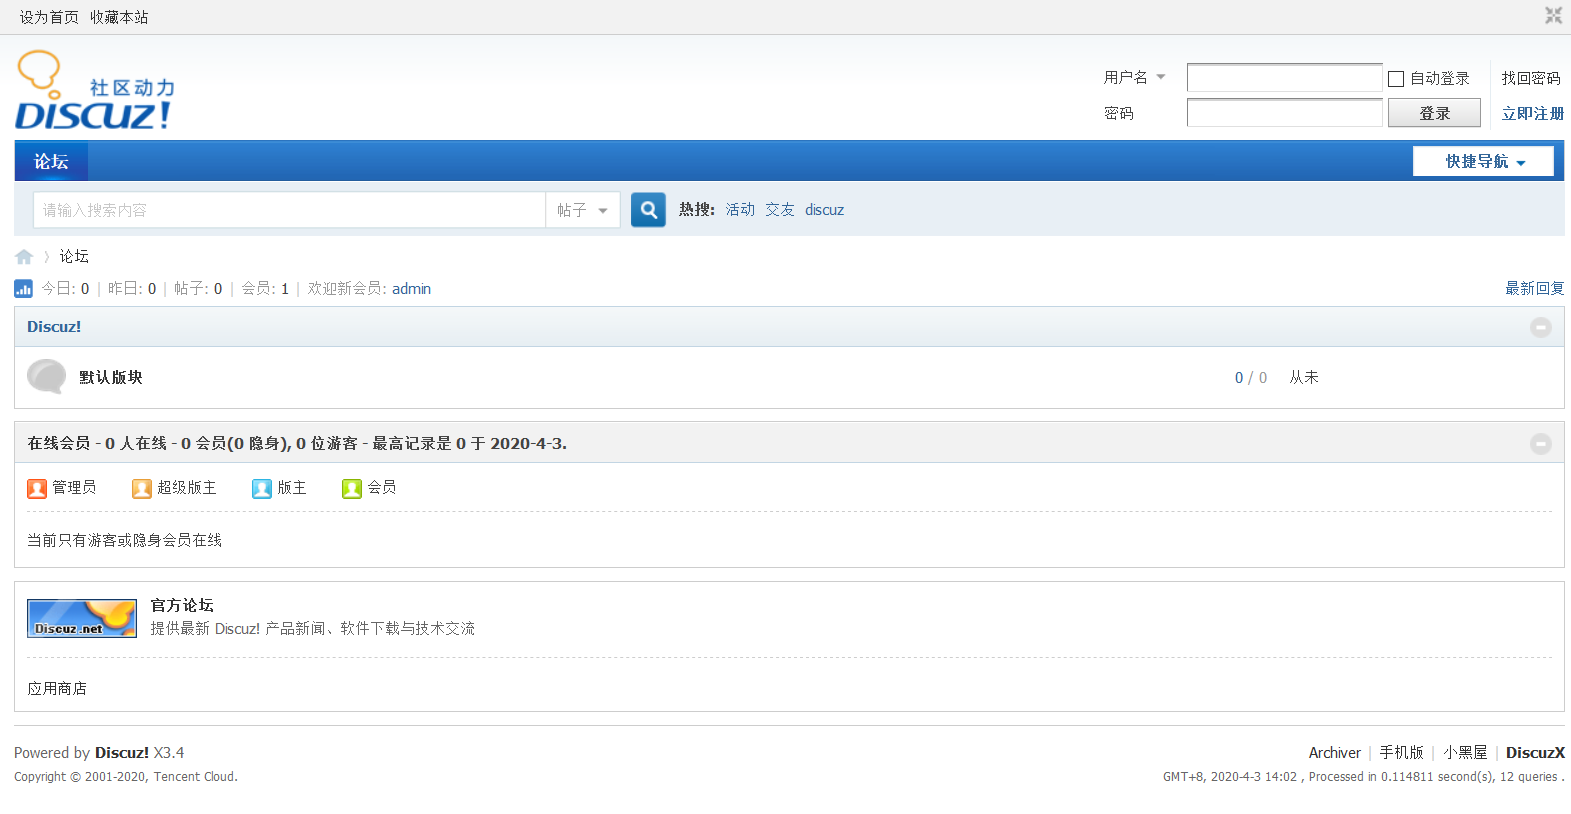 Forum posting ru. Boyxzeed2 similar. Boyxzeed Discuz. Форум php. Boyxzeed Chinese.